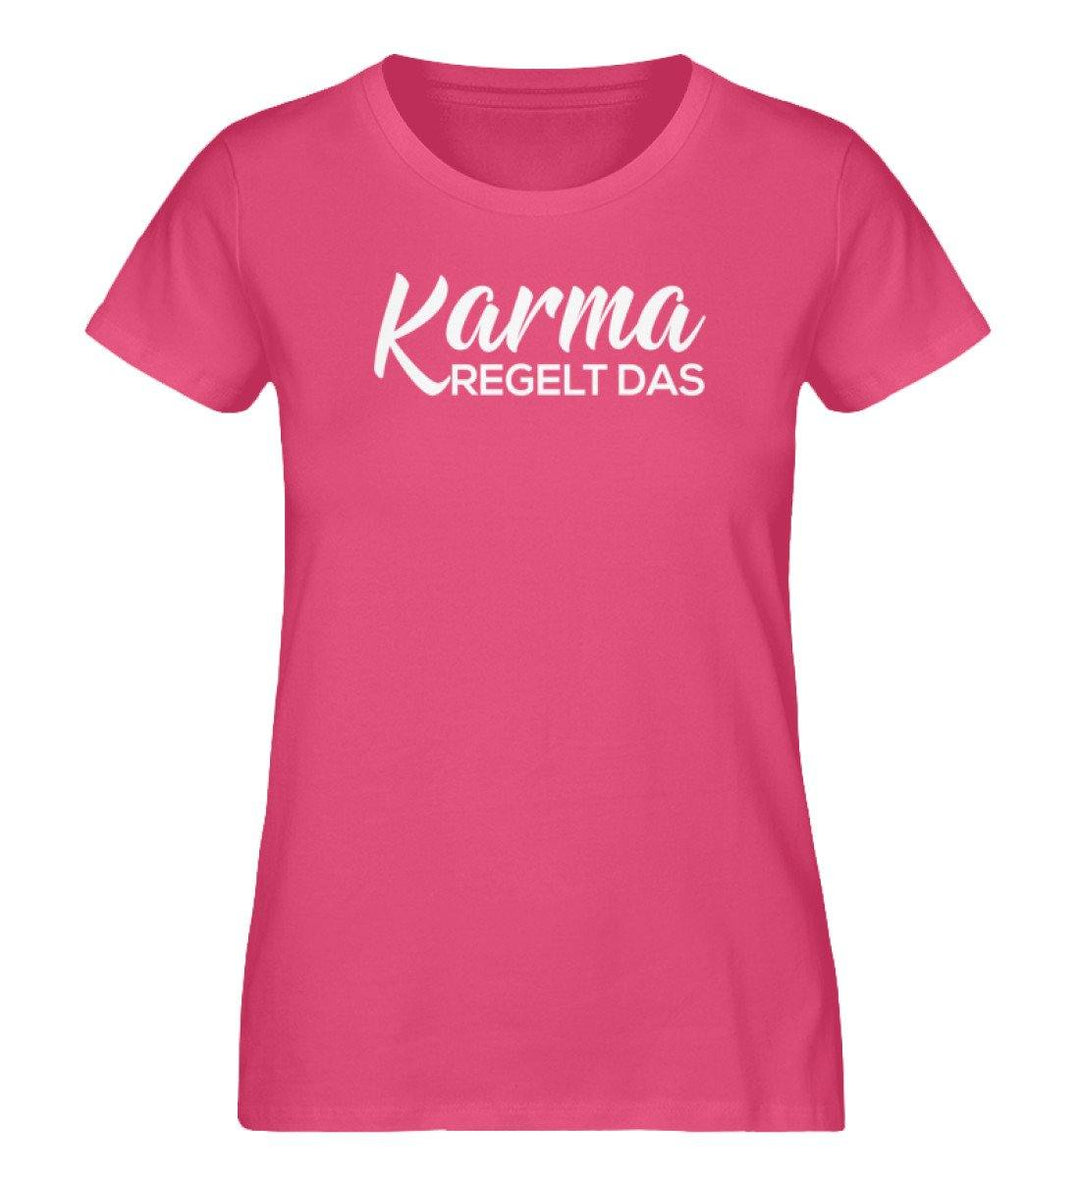 Karma Regelt Das - Damen Premium Organic Shirt - Words on Shirts Sag es mit dem Mittelfinger Shirts Hoodies Sweatshirt Taschen Gymsack Spruch Sprüche Statement